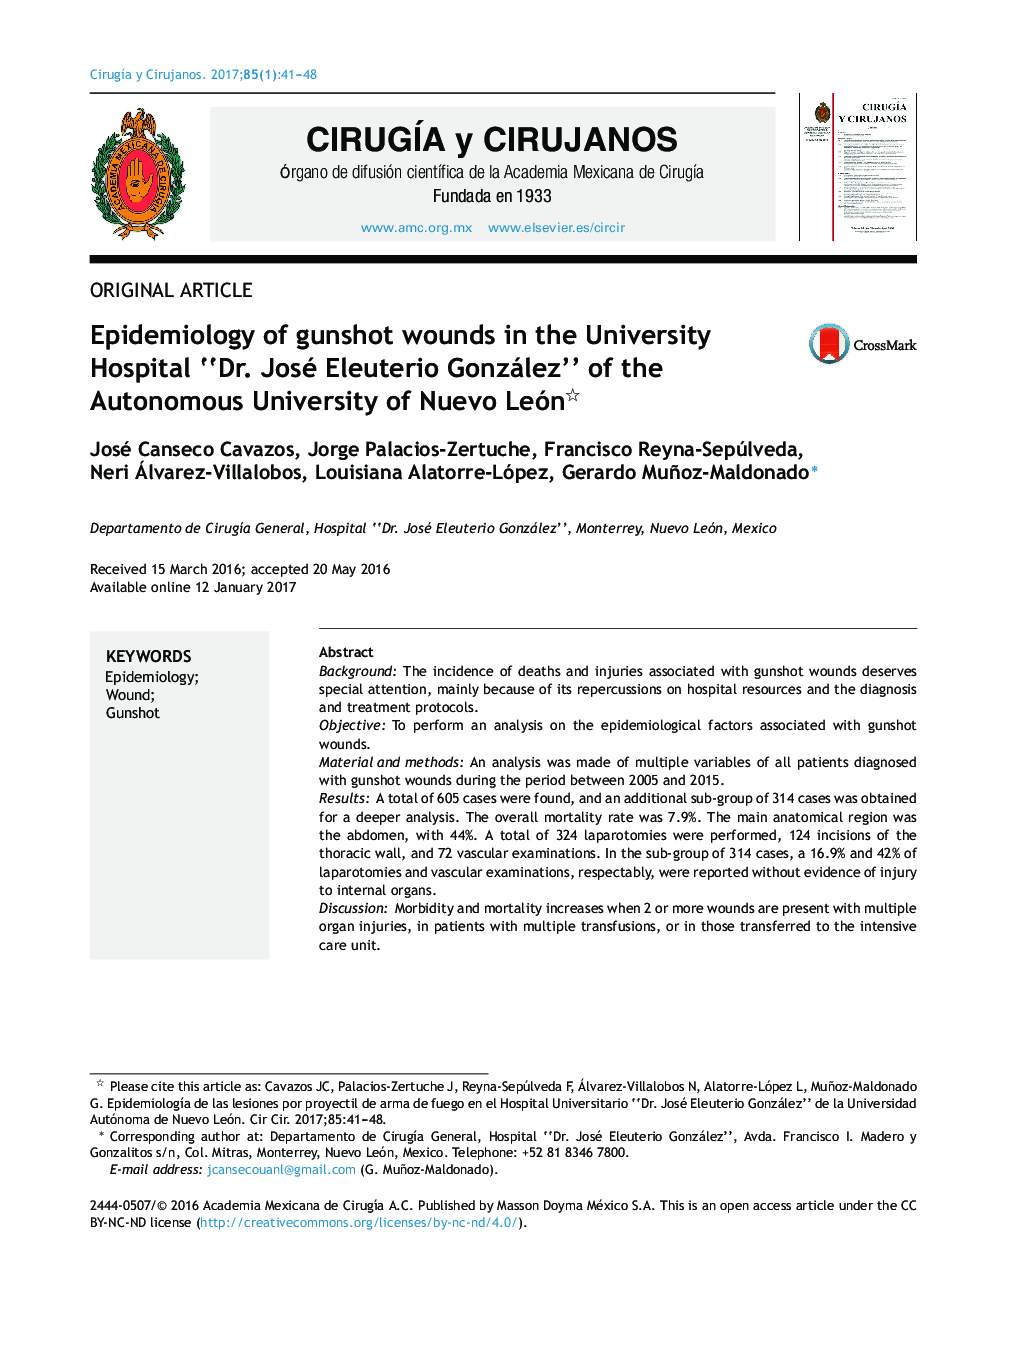 Epidemiology of gunshot wounds in the University Hospital “Dr. José Eleuterio González” of the Autonomous University of Nuevo León